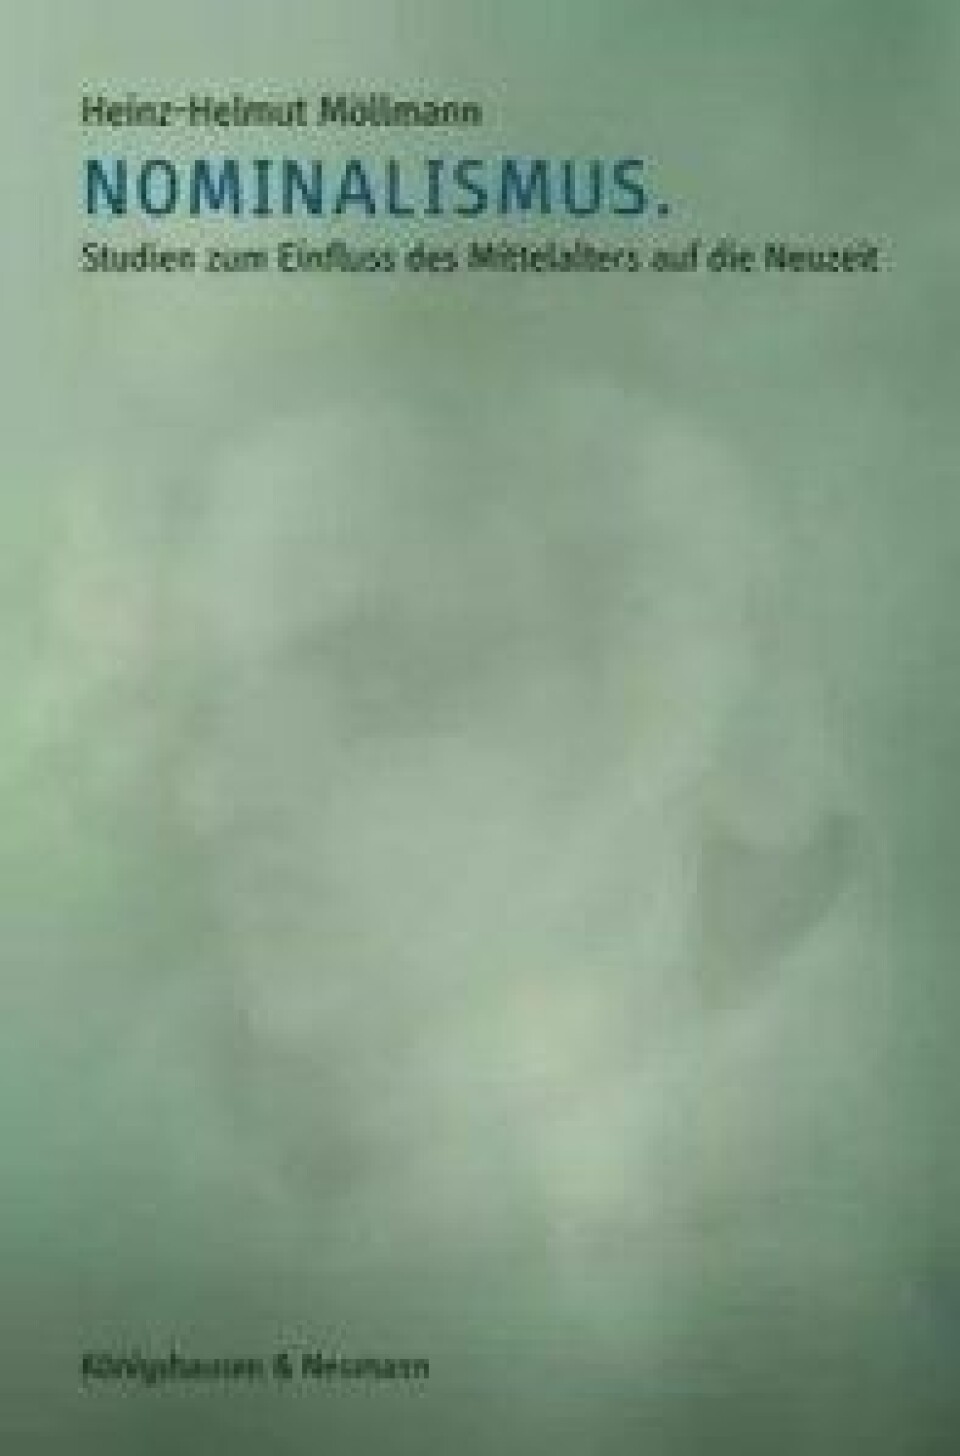 Nominalismus – Studien zum Einfluss des Mittelalters auf die Neuzeit av Heinz-Helmut Möllmann. Königshausen & Neumann, 2015.